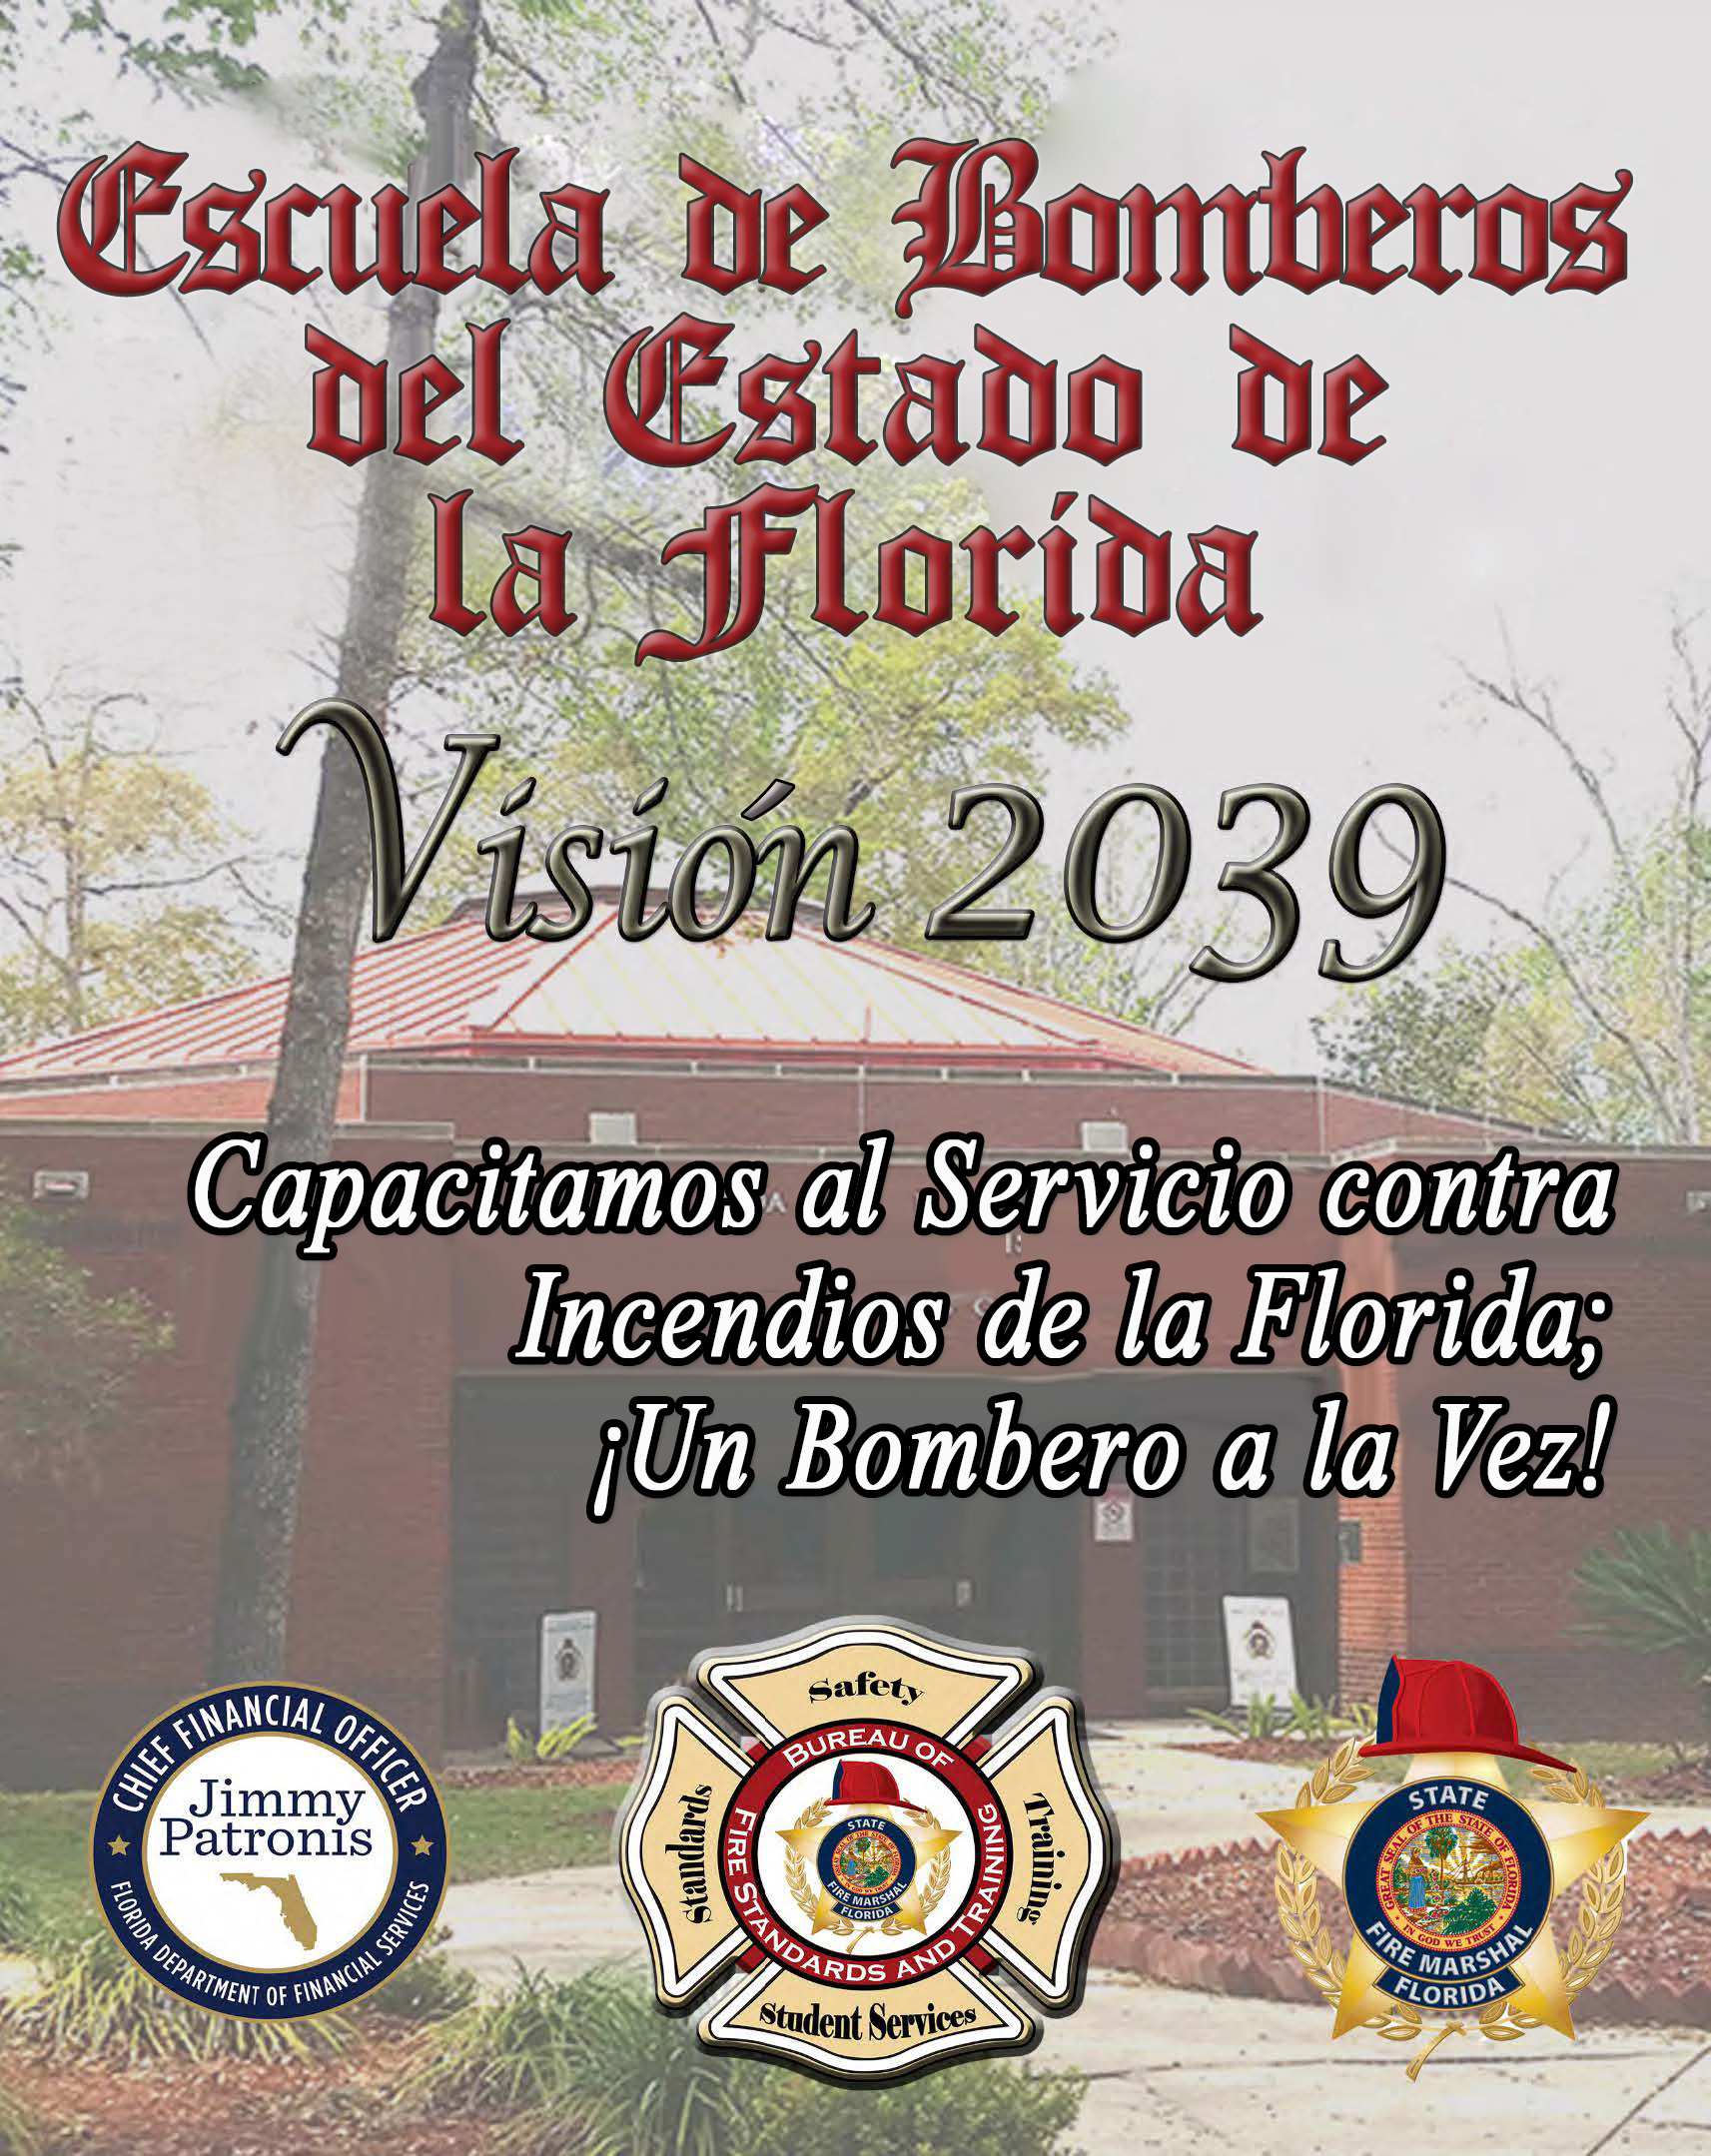 Folleto de Vision 2039 de la Escuela de Bomberos del Estado de la Florida